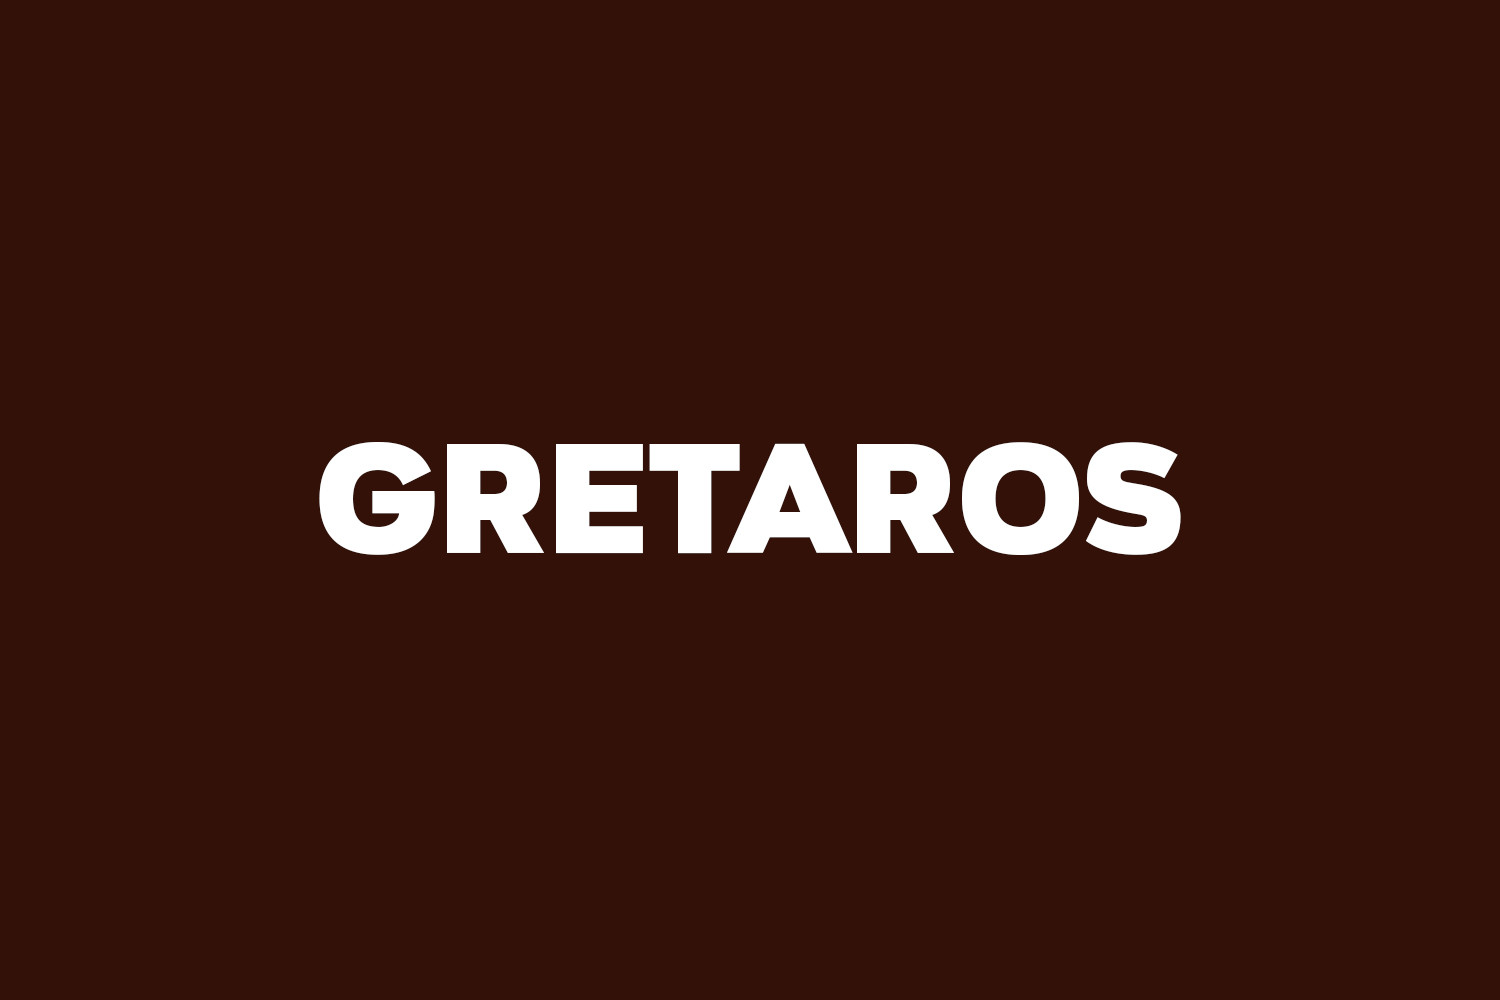 Gretaros Free Font